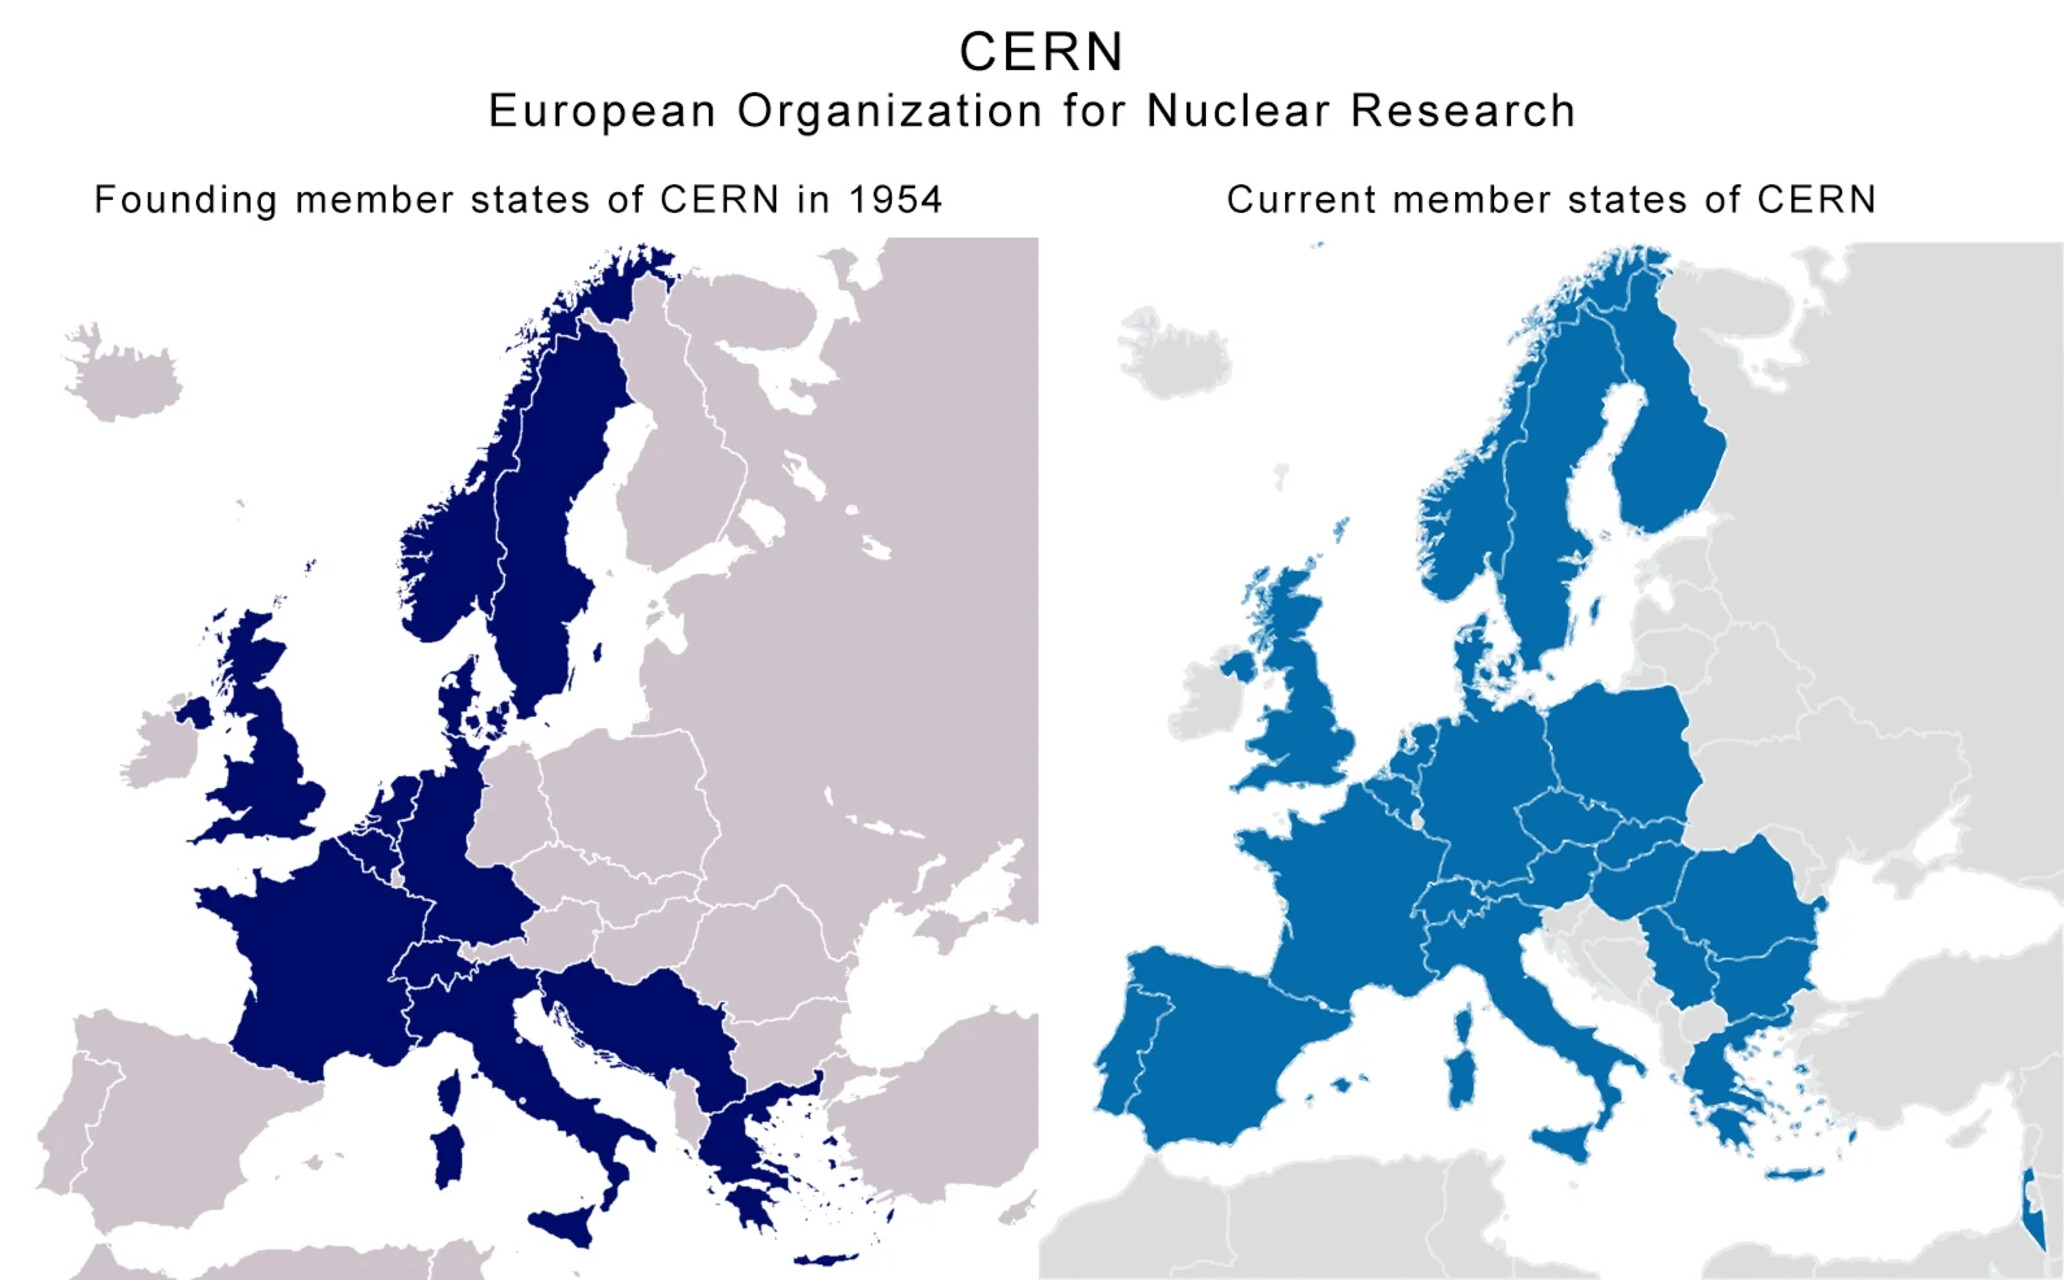 Brasil: dois mapas com comparação entre os países fundadores e os atuais estados membros do CERN